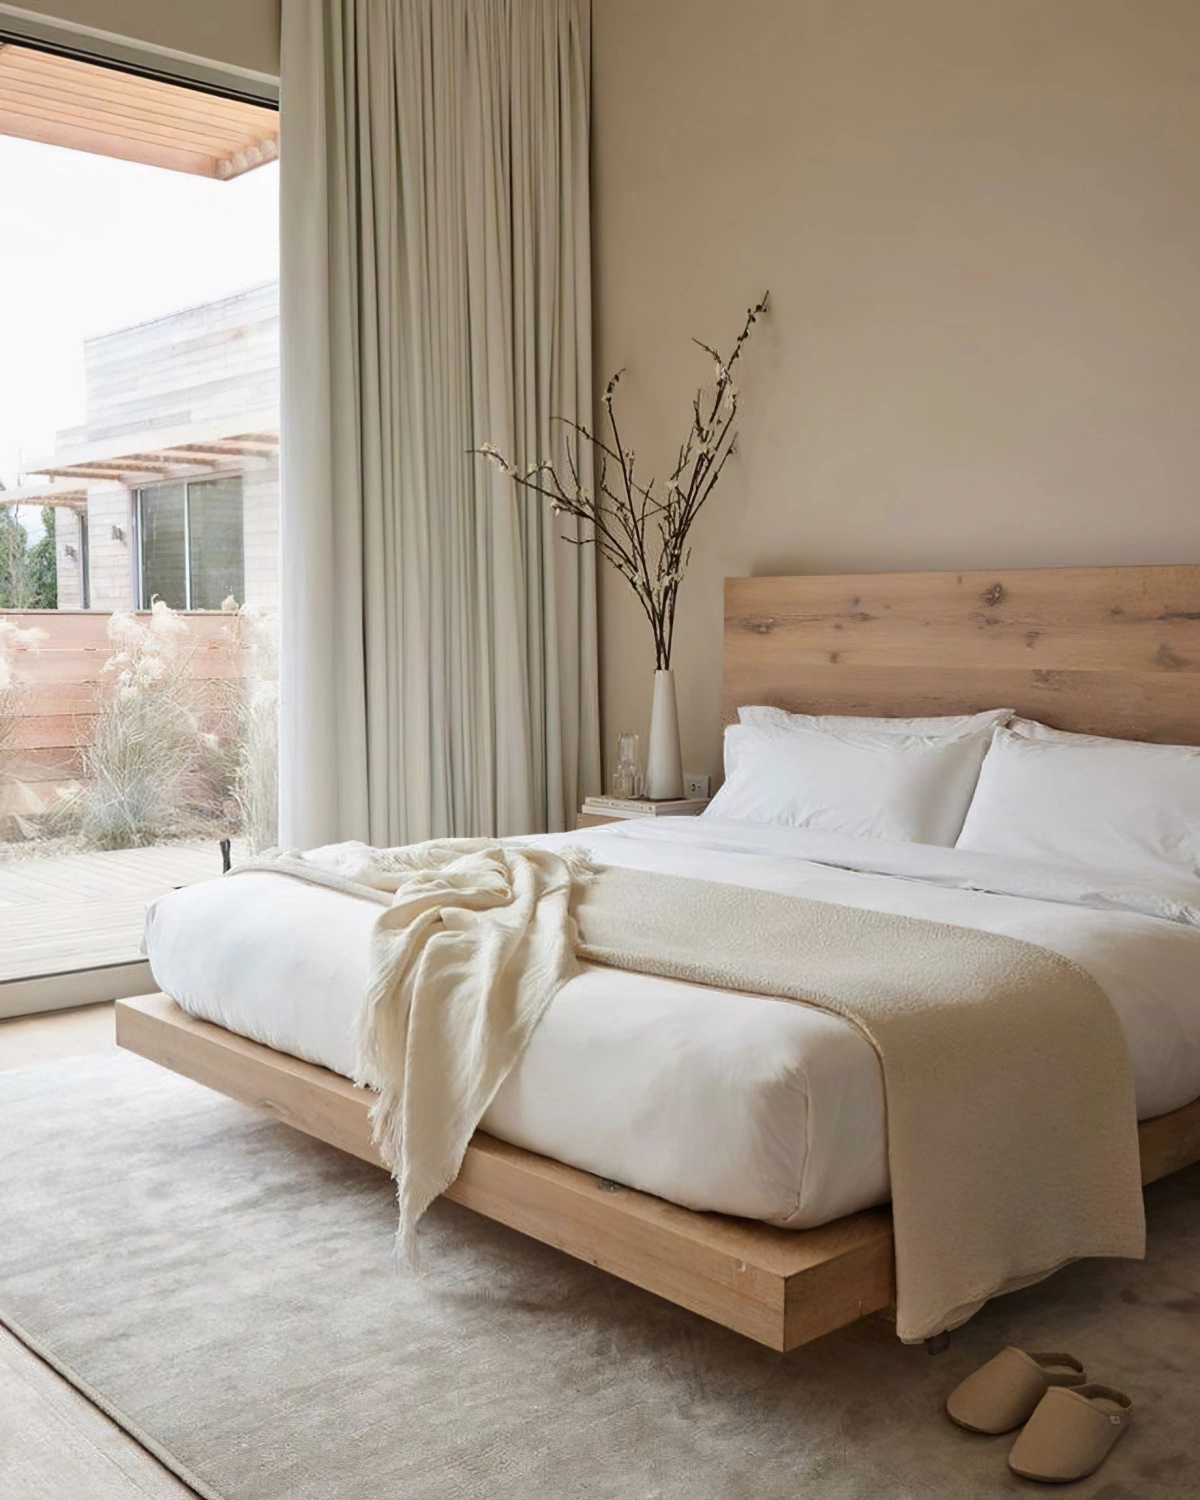 deco chambre adulte materiaux nature tete de lit cadre bois linge de lit blanc